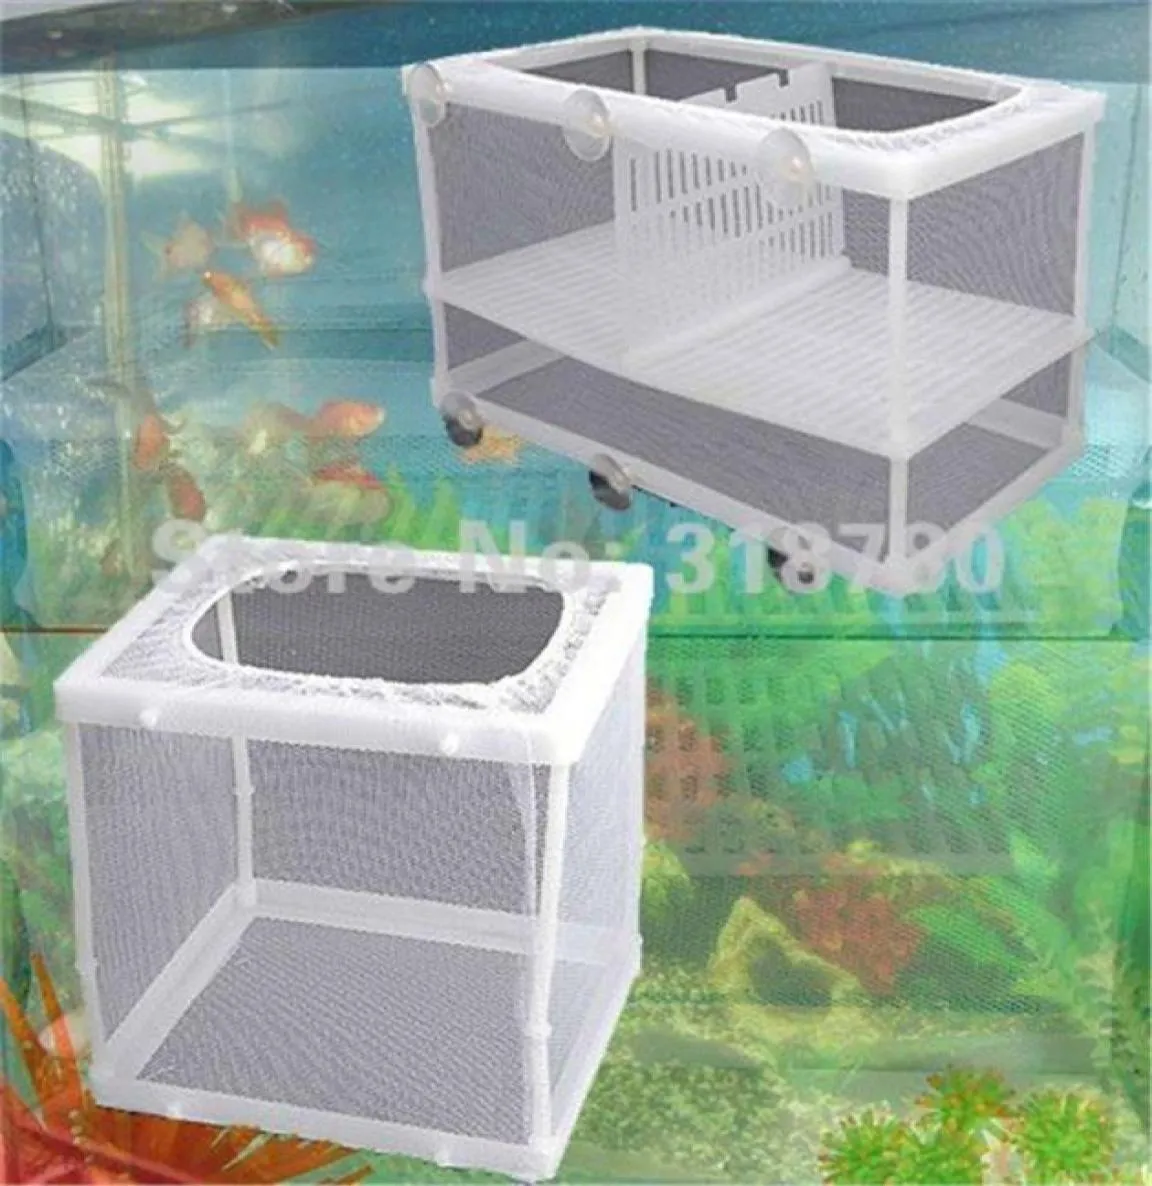 SL Whole Aquarium Caja de reproducción de peces Neta Hatchery Hatchery Caja de aislamiento para accesorios de acuarios3974608